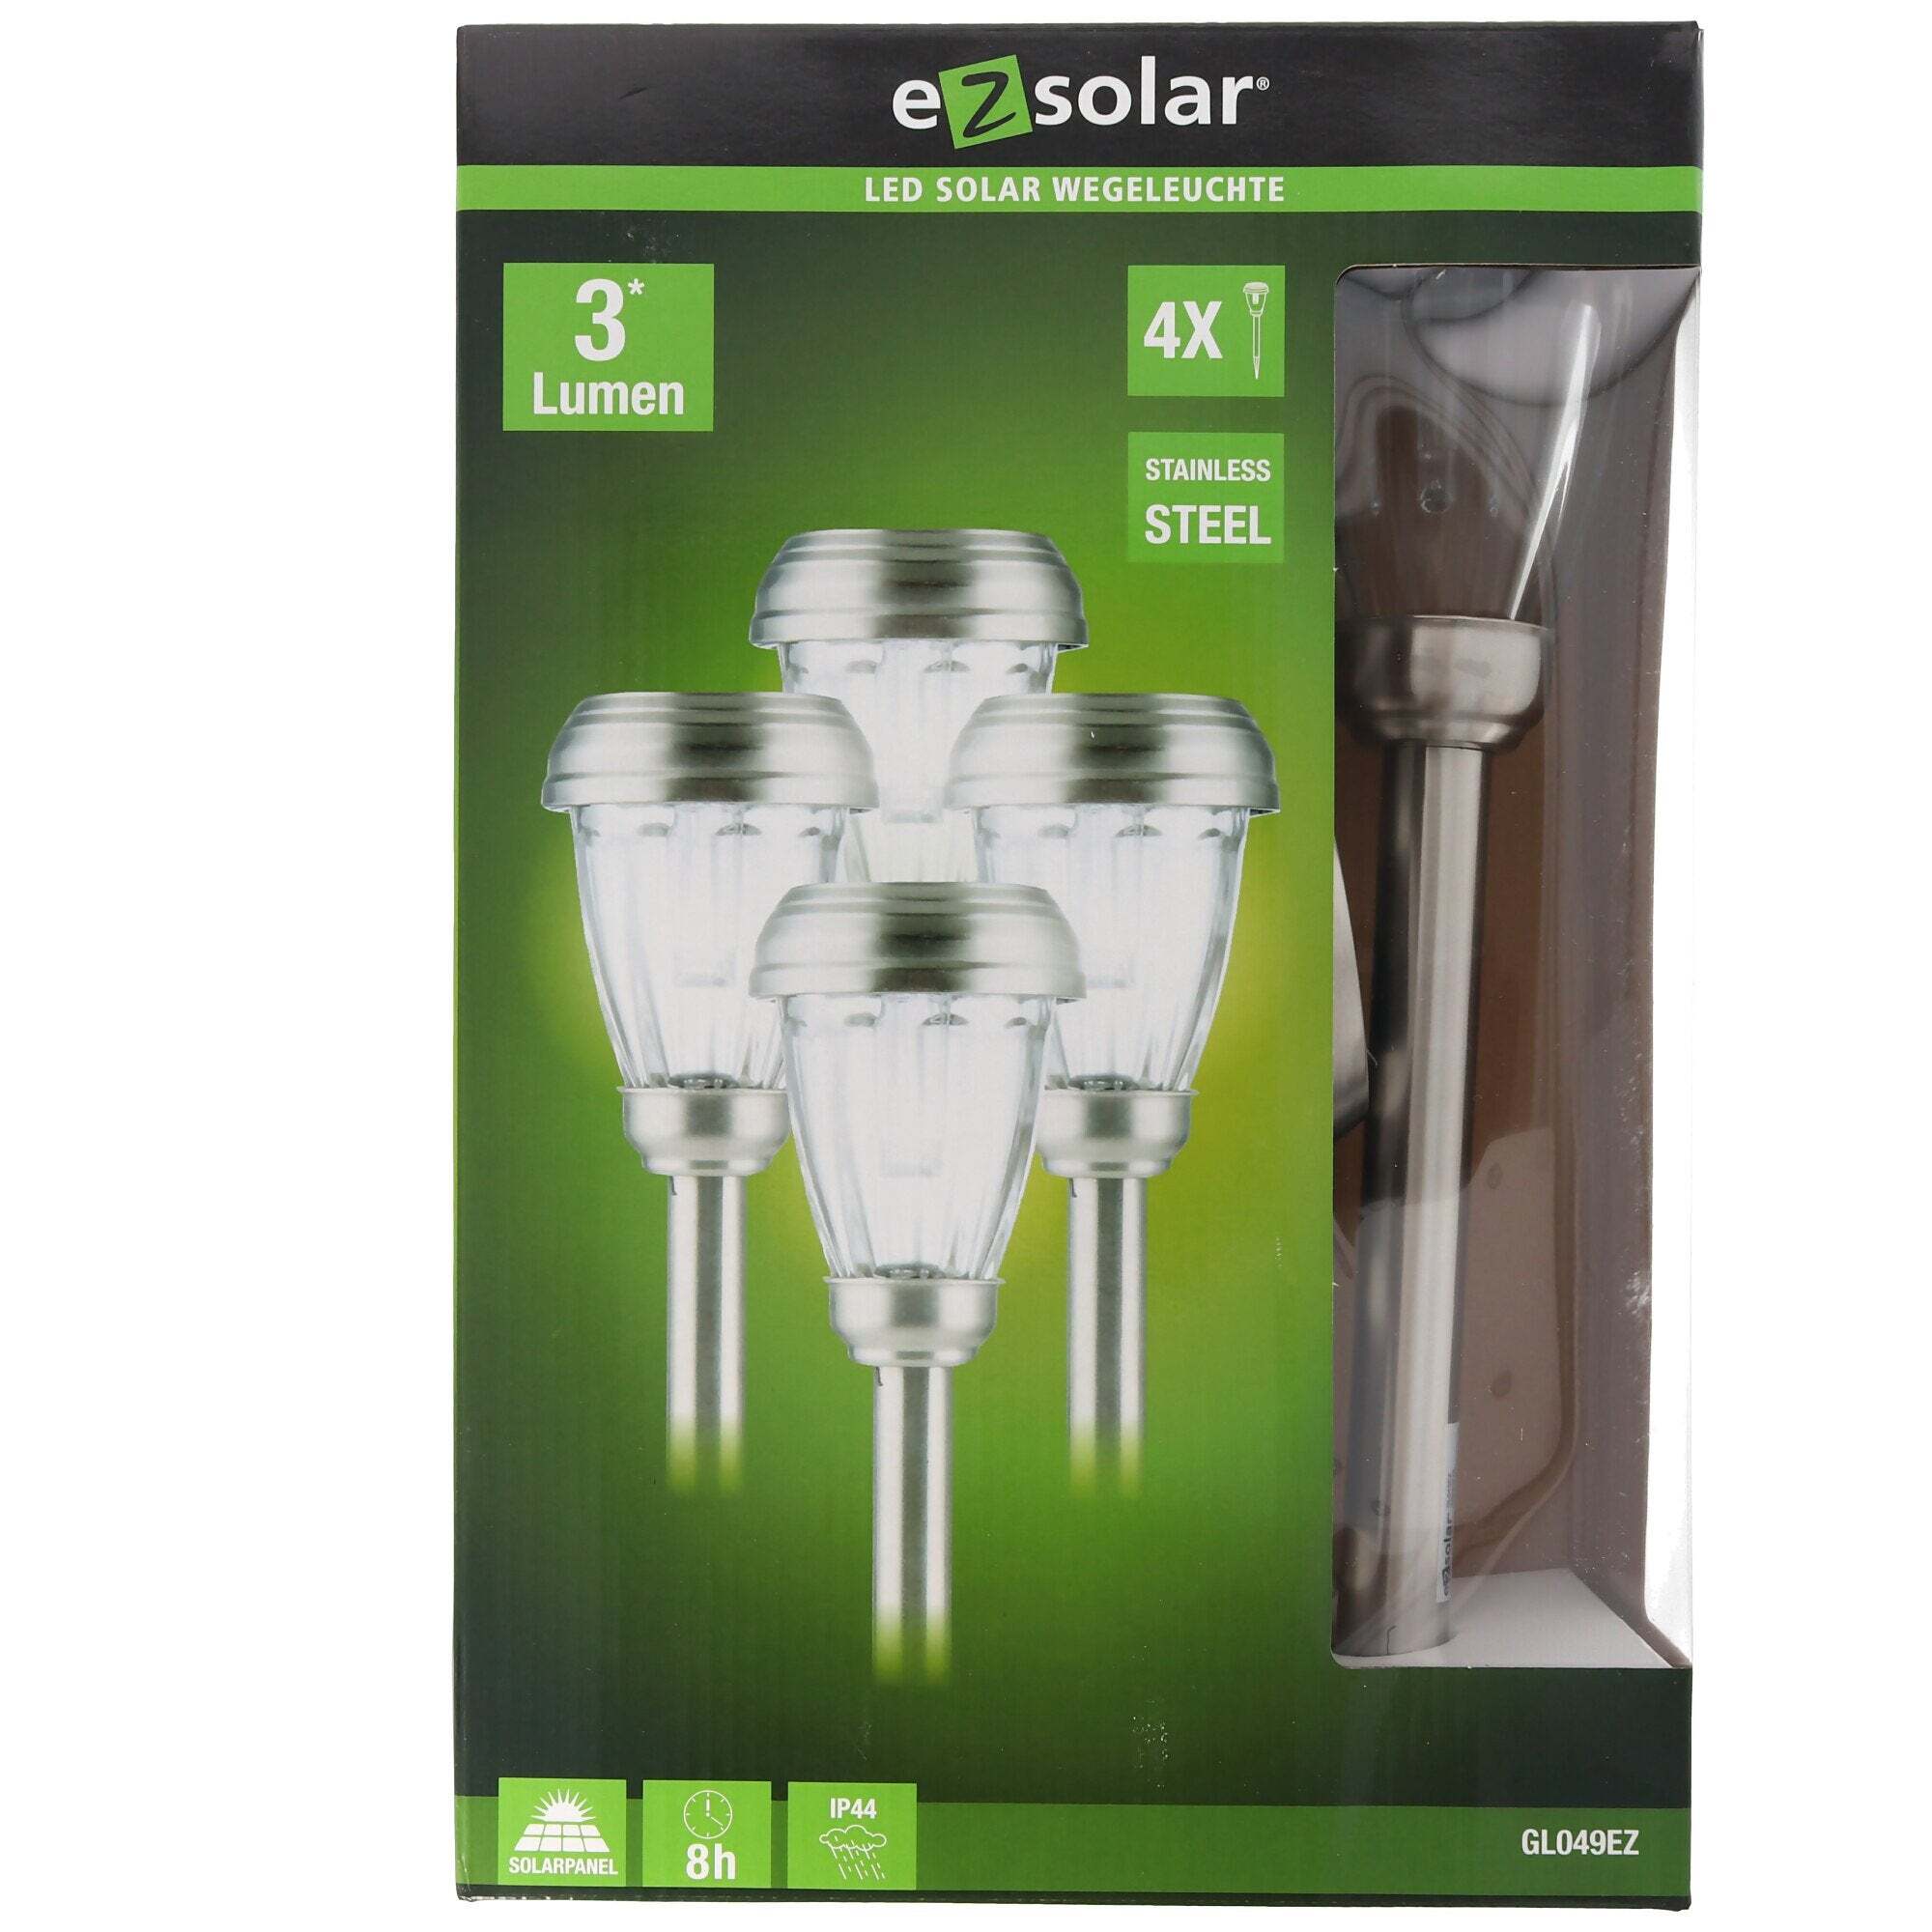 ez solar Set van 4 LED-tuinpadlampen op zonne-energie met maximaal 3 lumen, roestvrij staal, met standaard Ni